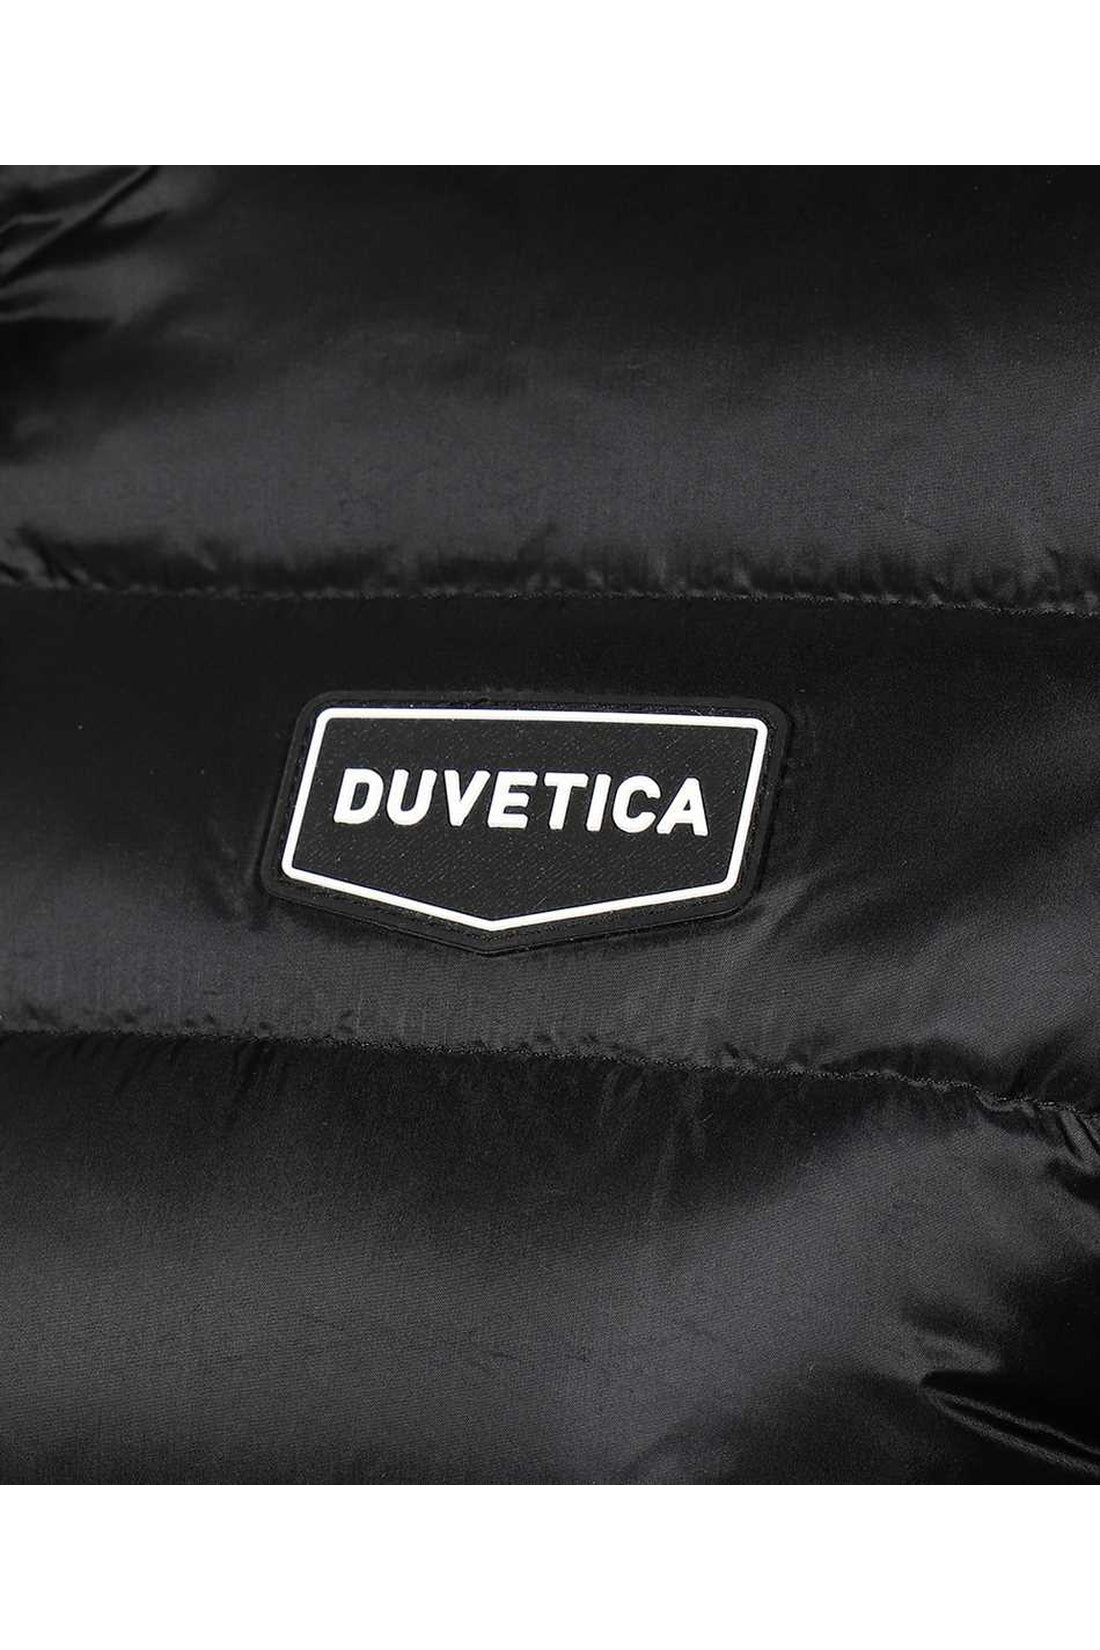 Duvetica-OUTLET-SALE-Techno-nylon down jacket-ARCHIVIST